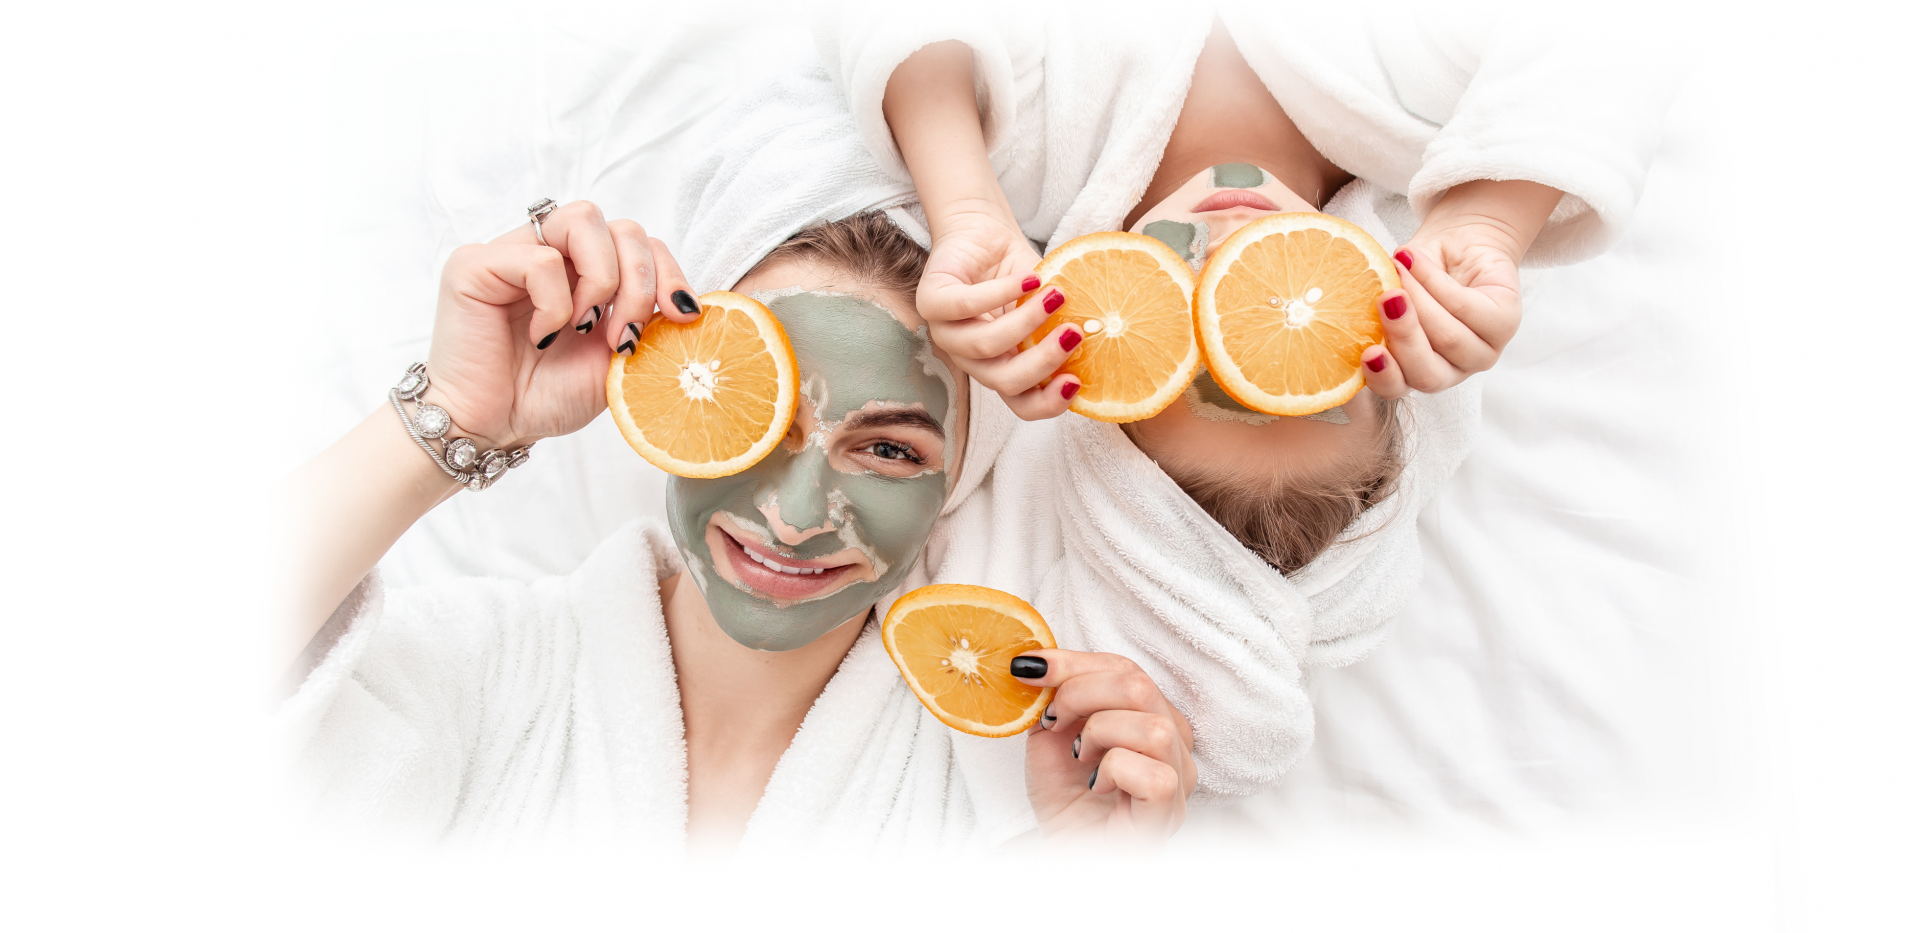 Symbolbild Muttertag: zwei Frauen halten sich Orangenscheiben vor die Gesichter, sie tragen Gesichtsmasken